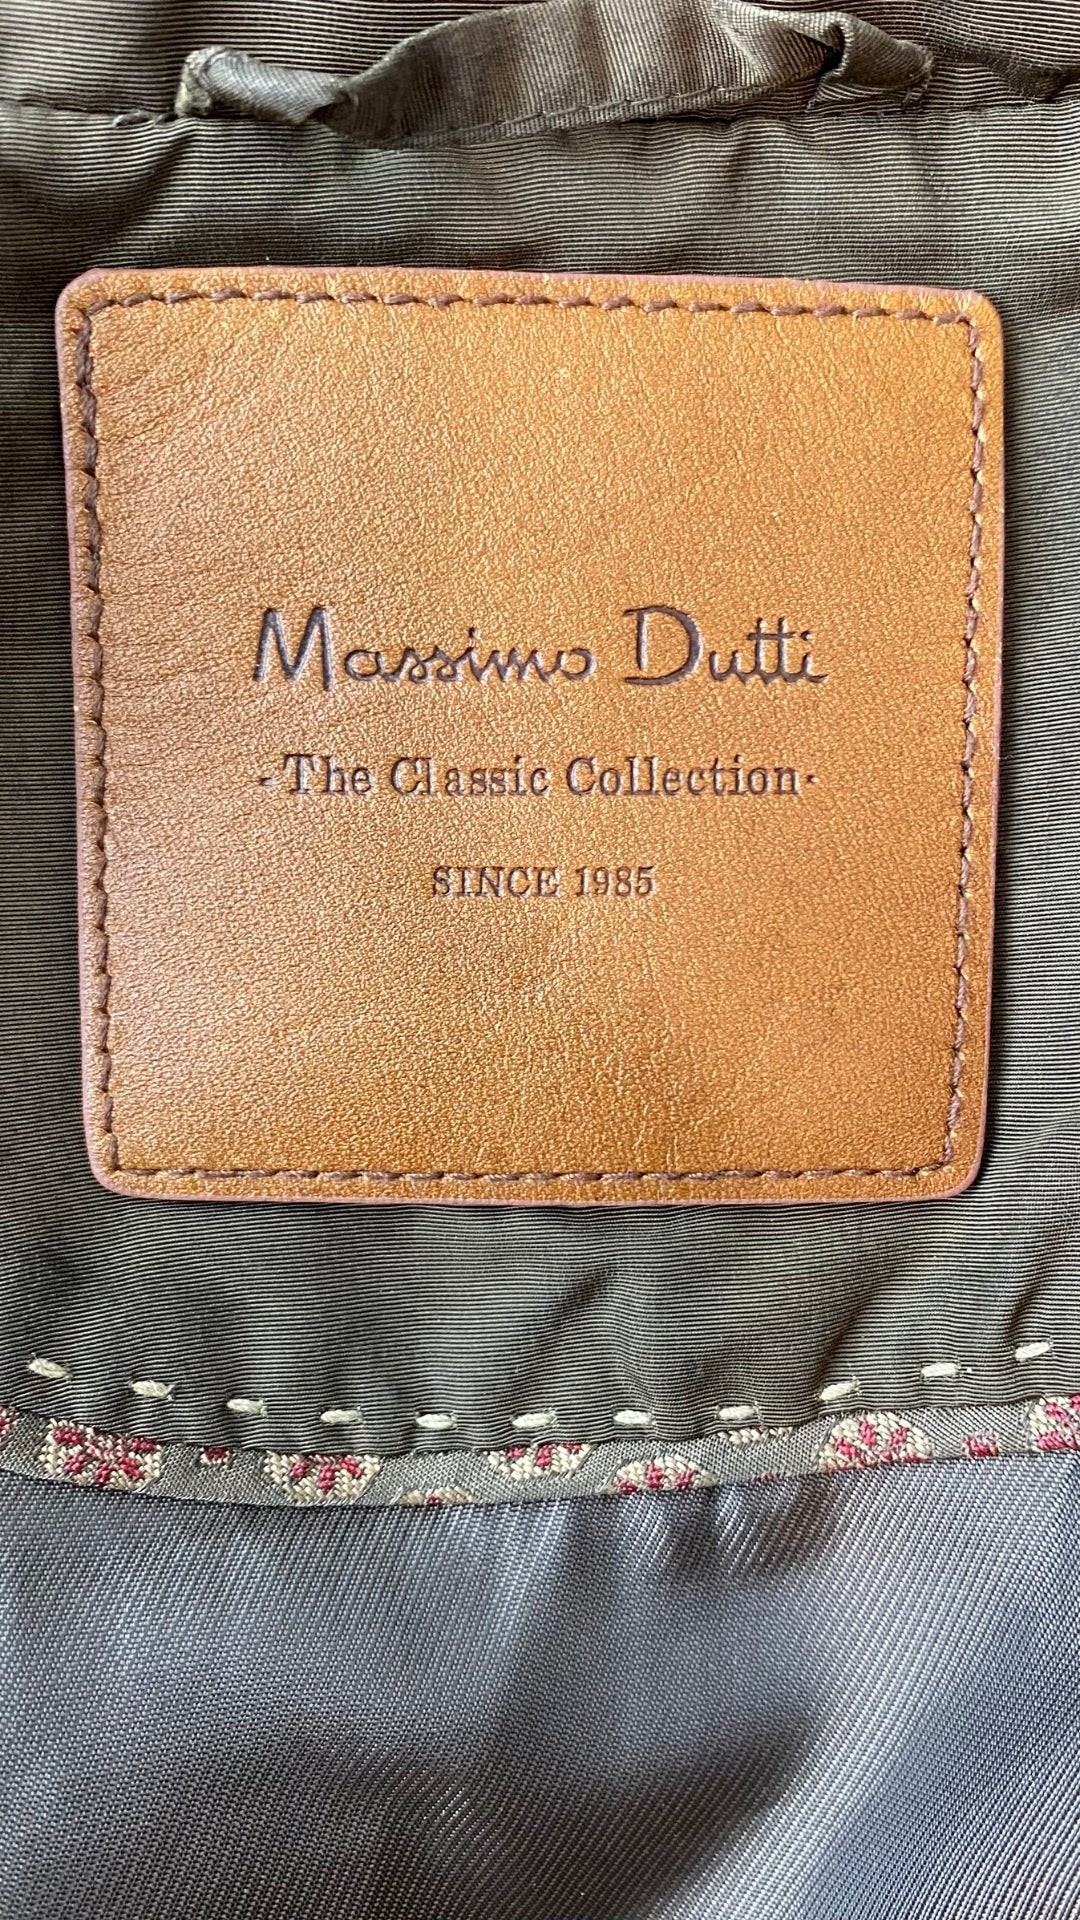 Veste matelassée kaki foncé Massimo Dutti, taille small. Vue de l'étiquette de marque.